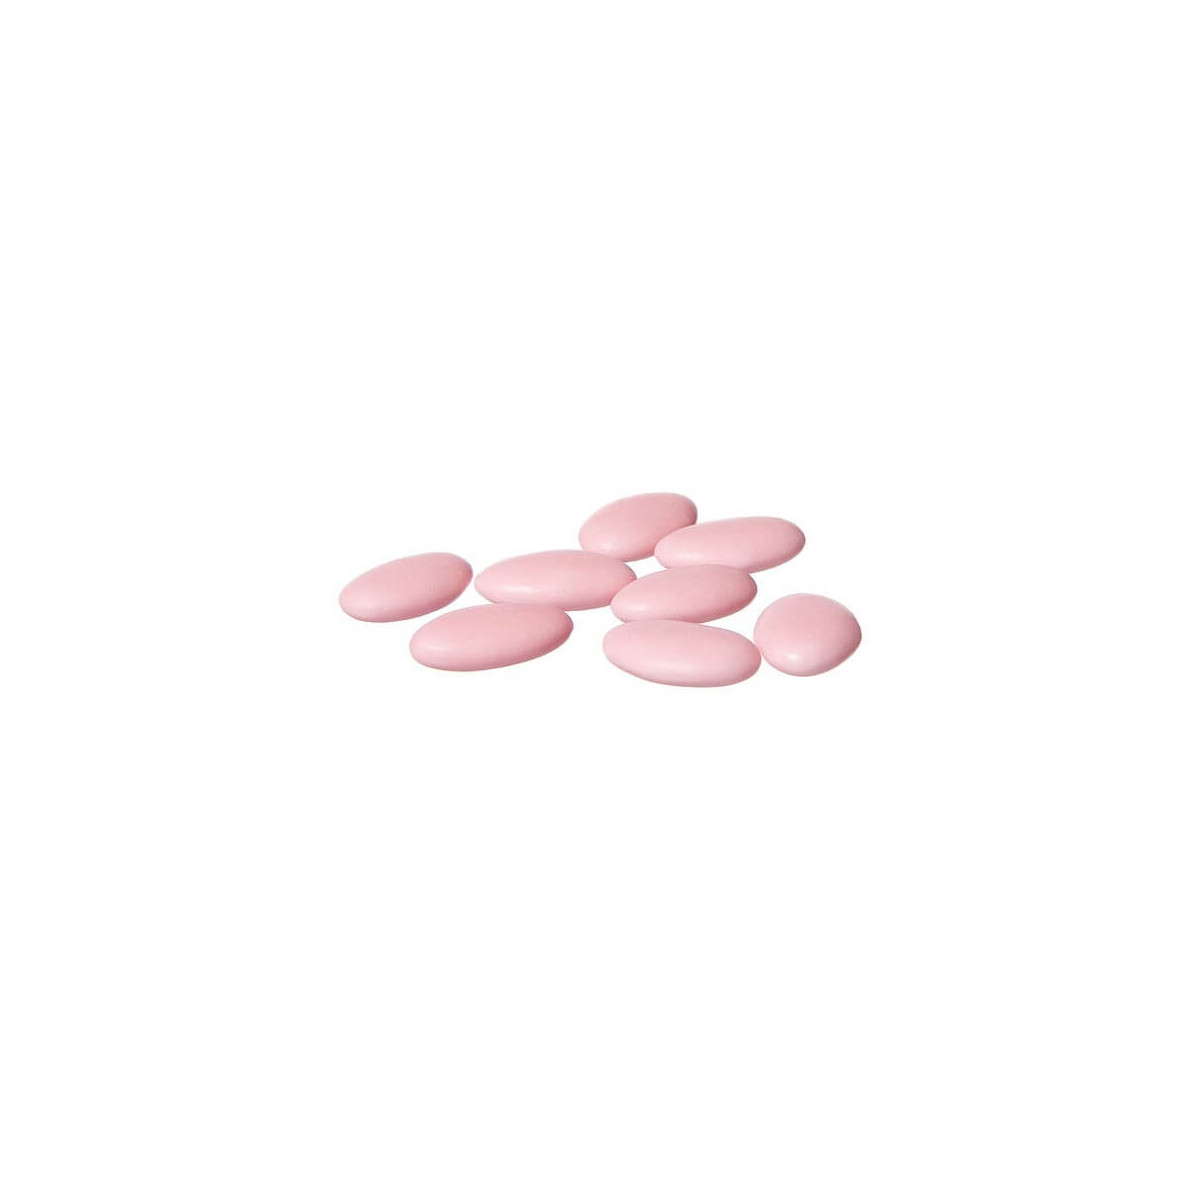 Bucce di cioccolato rosa